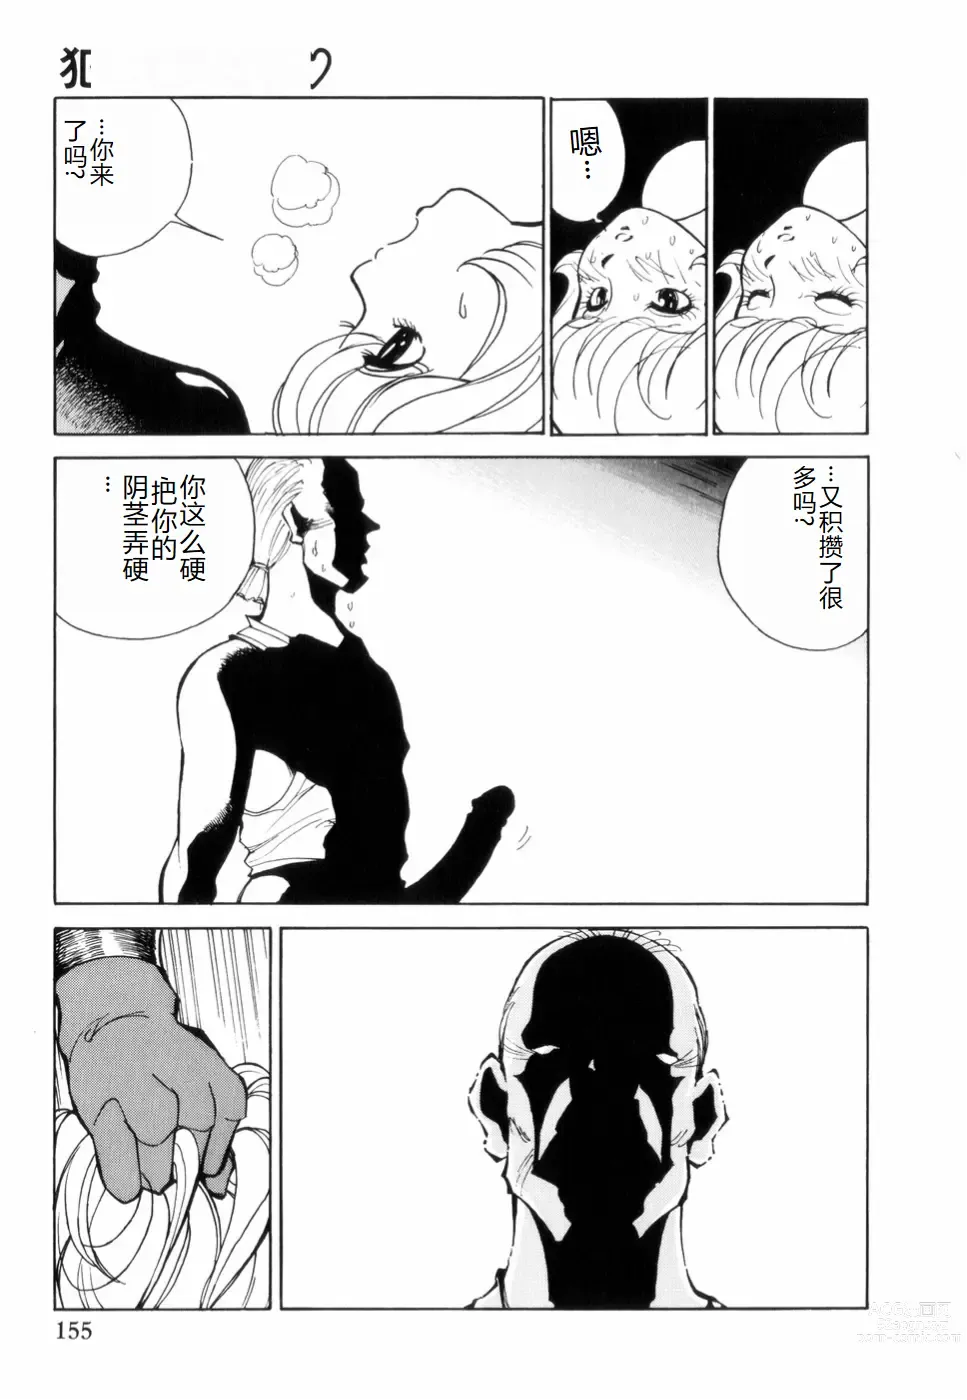 Page 159 of manga Hakujuu no Hasha